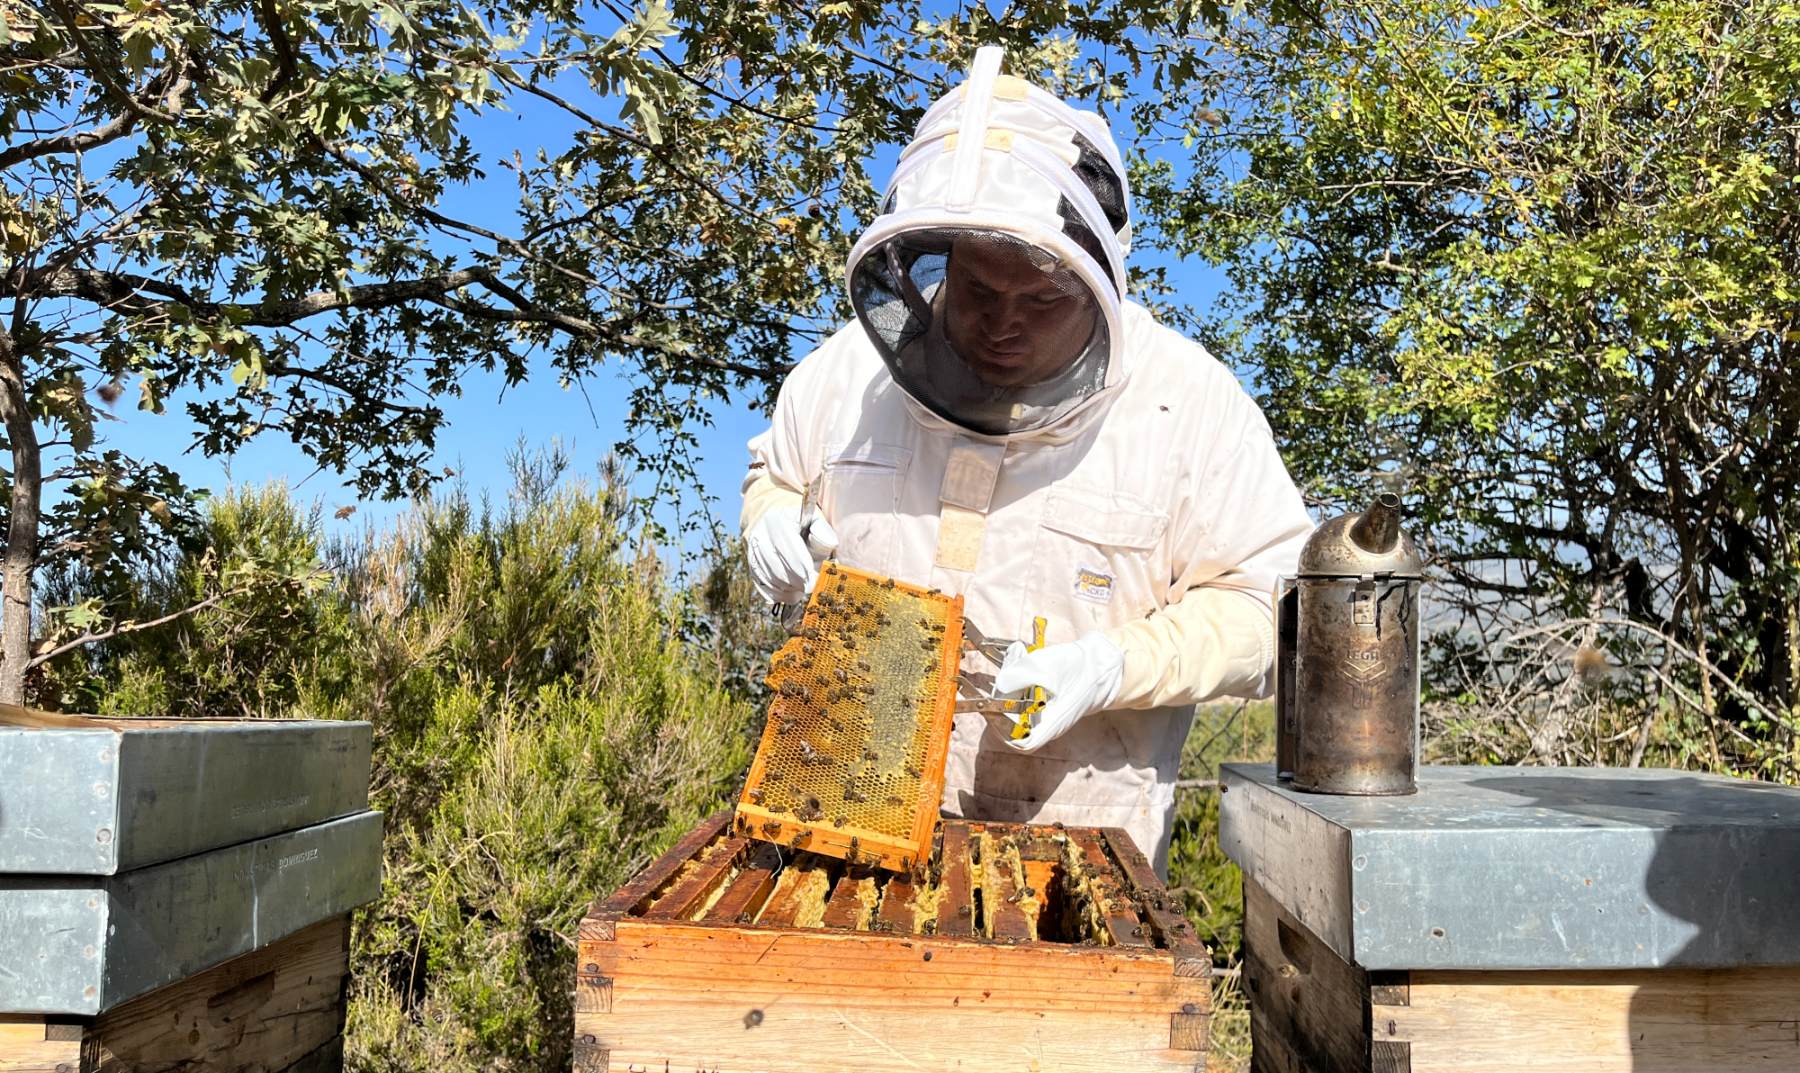 Utilizar correctamente un ahumador en la apicultura evita los incendios